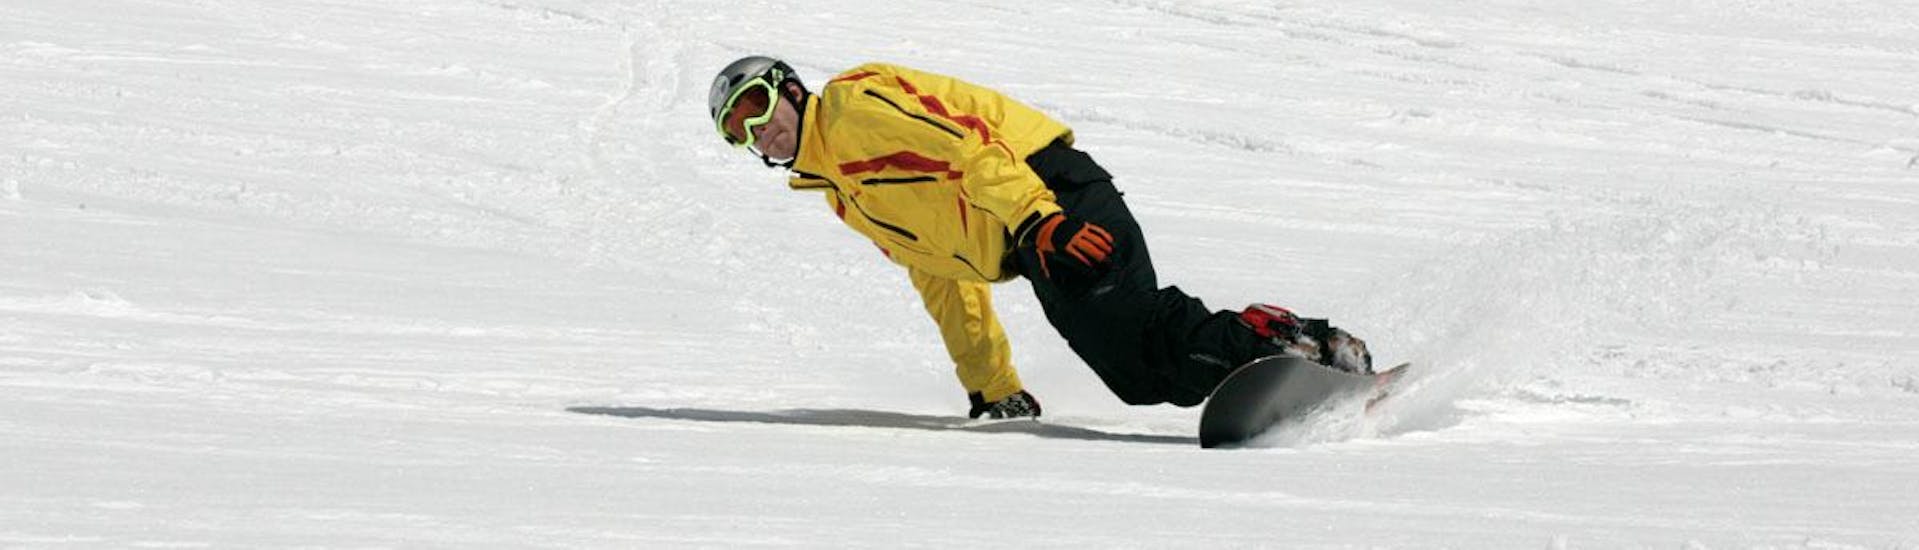 Snowboardlessen - beginners.